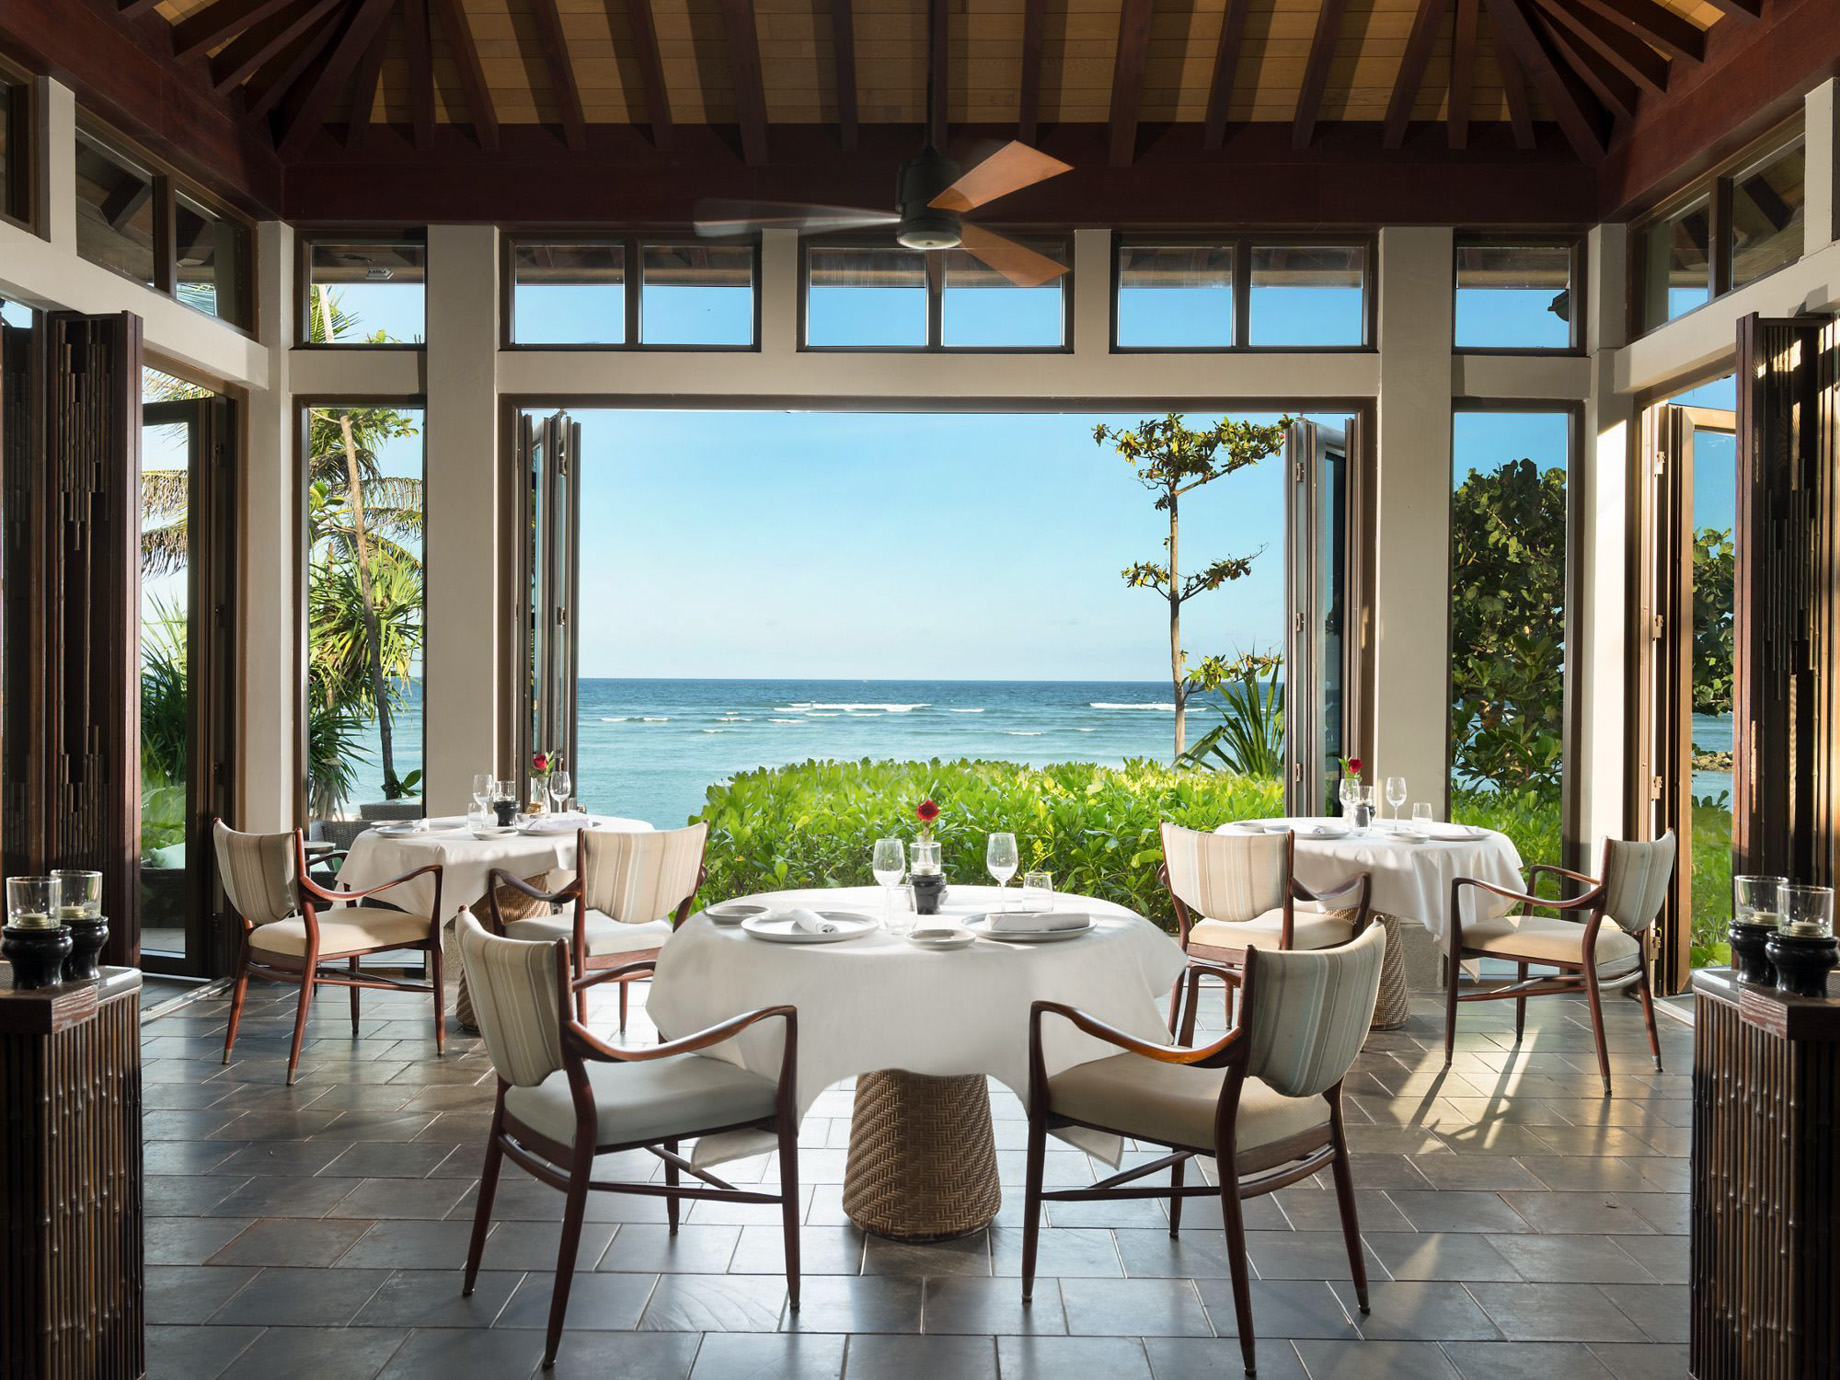 The Ritz-Carlton, Bali Nusa Dua Hotel – Bali, Indonesia – The Beach Grill Restaurant Ocean View